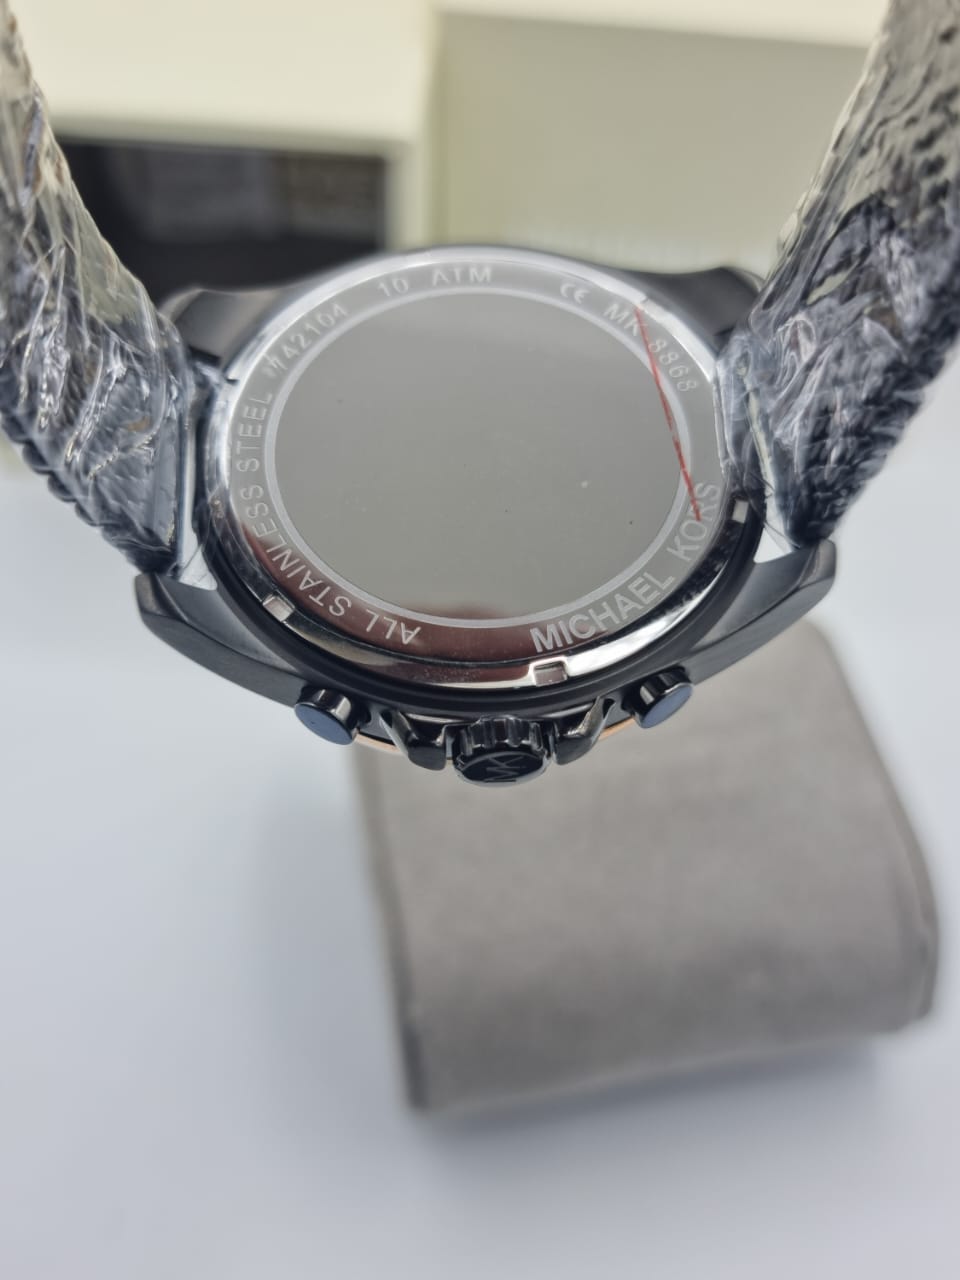 Michael Kors Men's Brecken Quartz Watch with Stainless Steel Strap MK8868